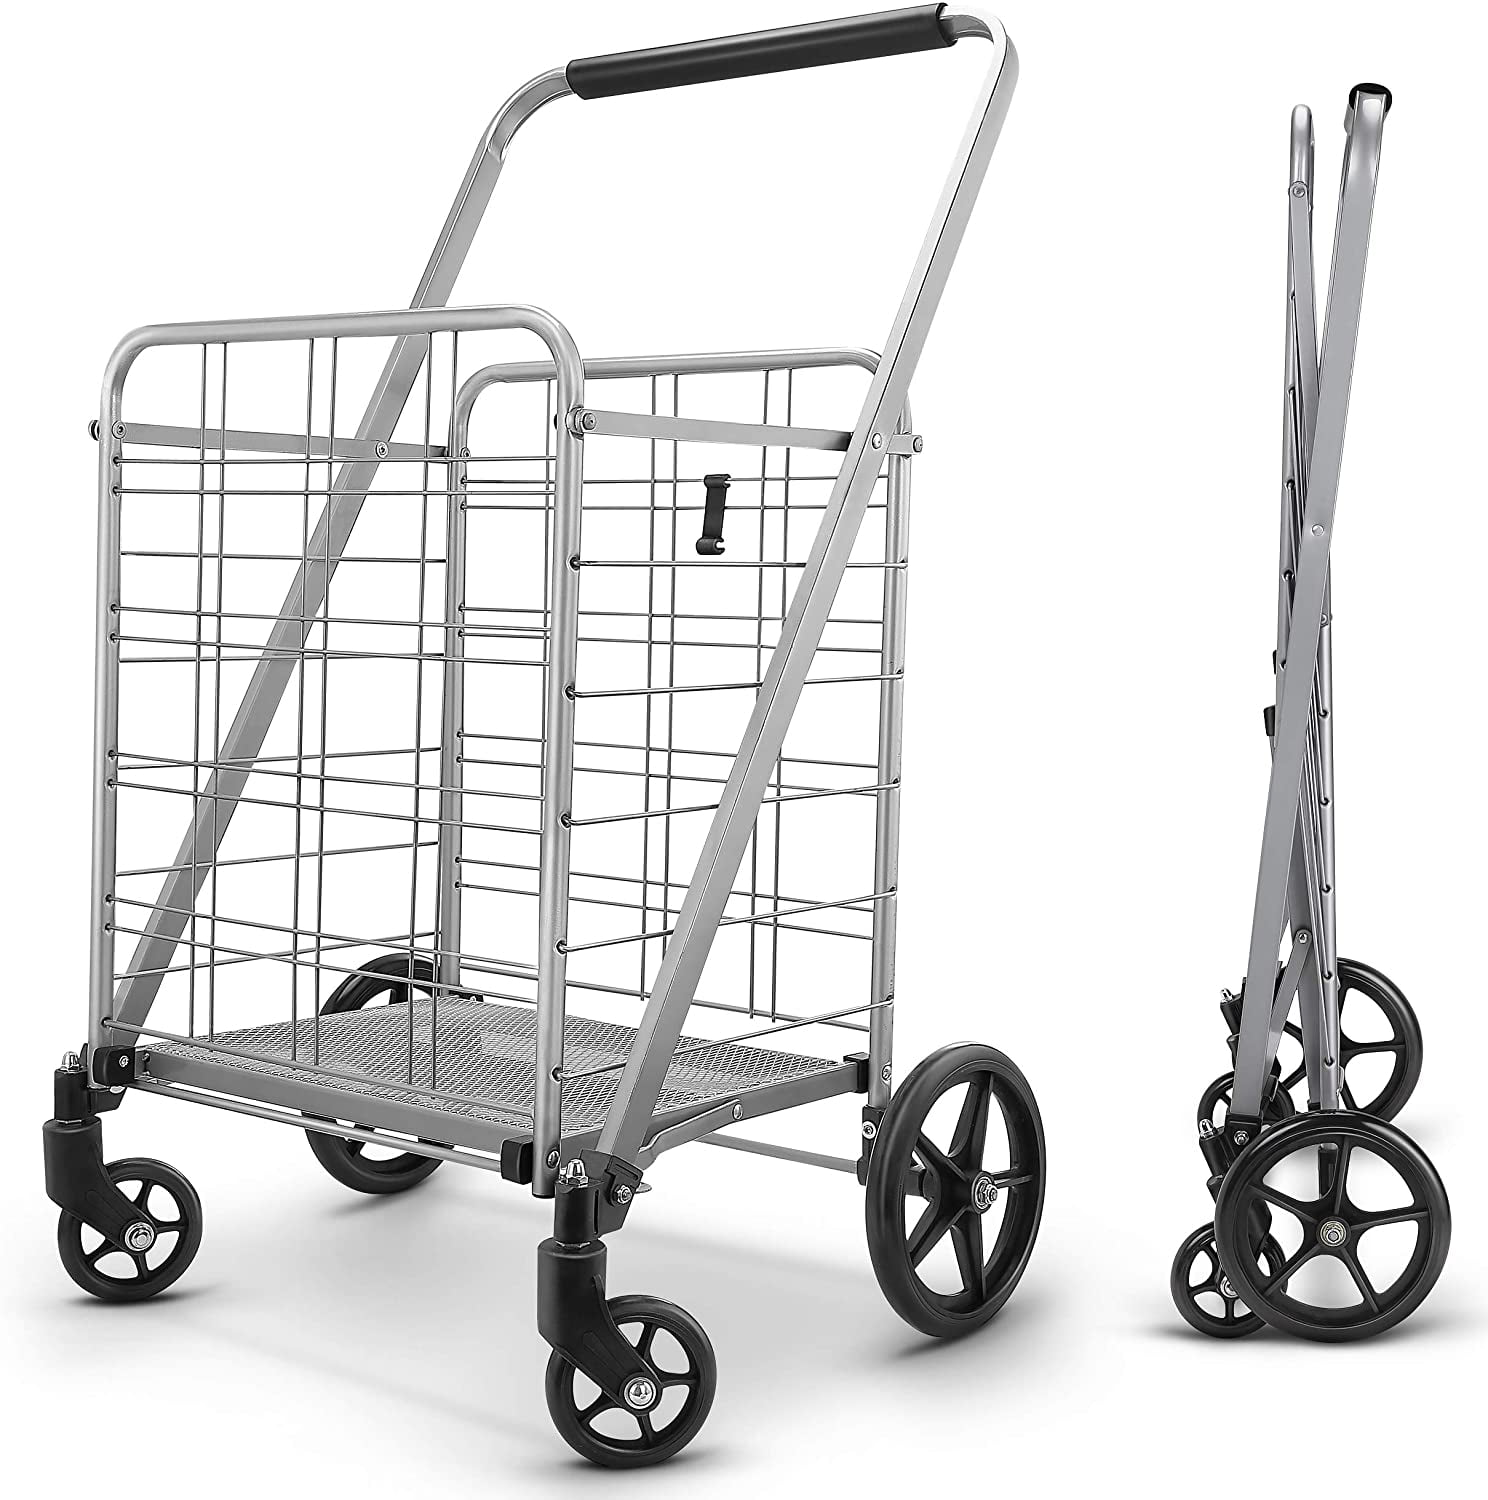 DLUX Heavy Duty Double Basket Folding Shopping Cart w/Front Metal Swivel Wheels 